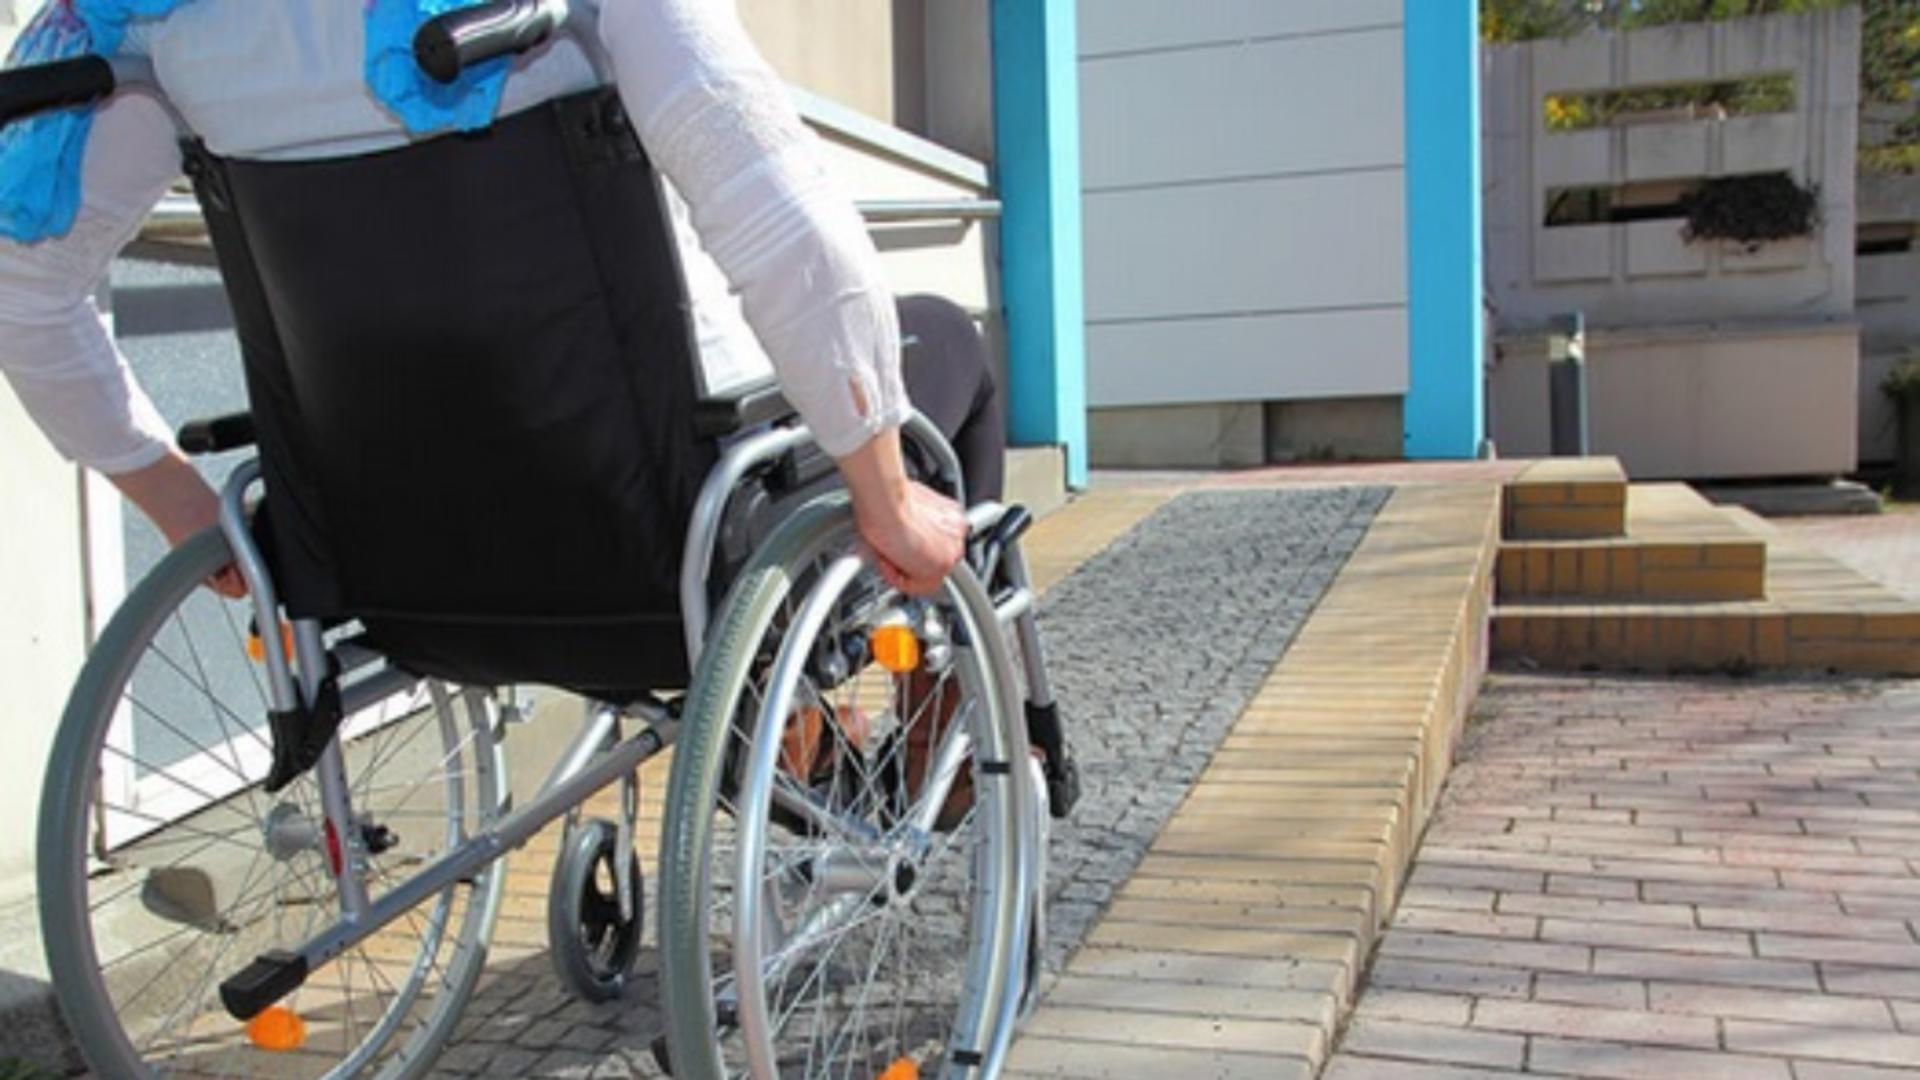 Tânăr cu handicap grav, umilit de Comisia de Evaluare: “Ar putea pune marfa pe raft la un magazin”